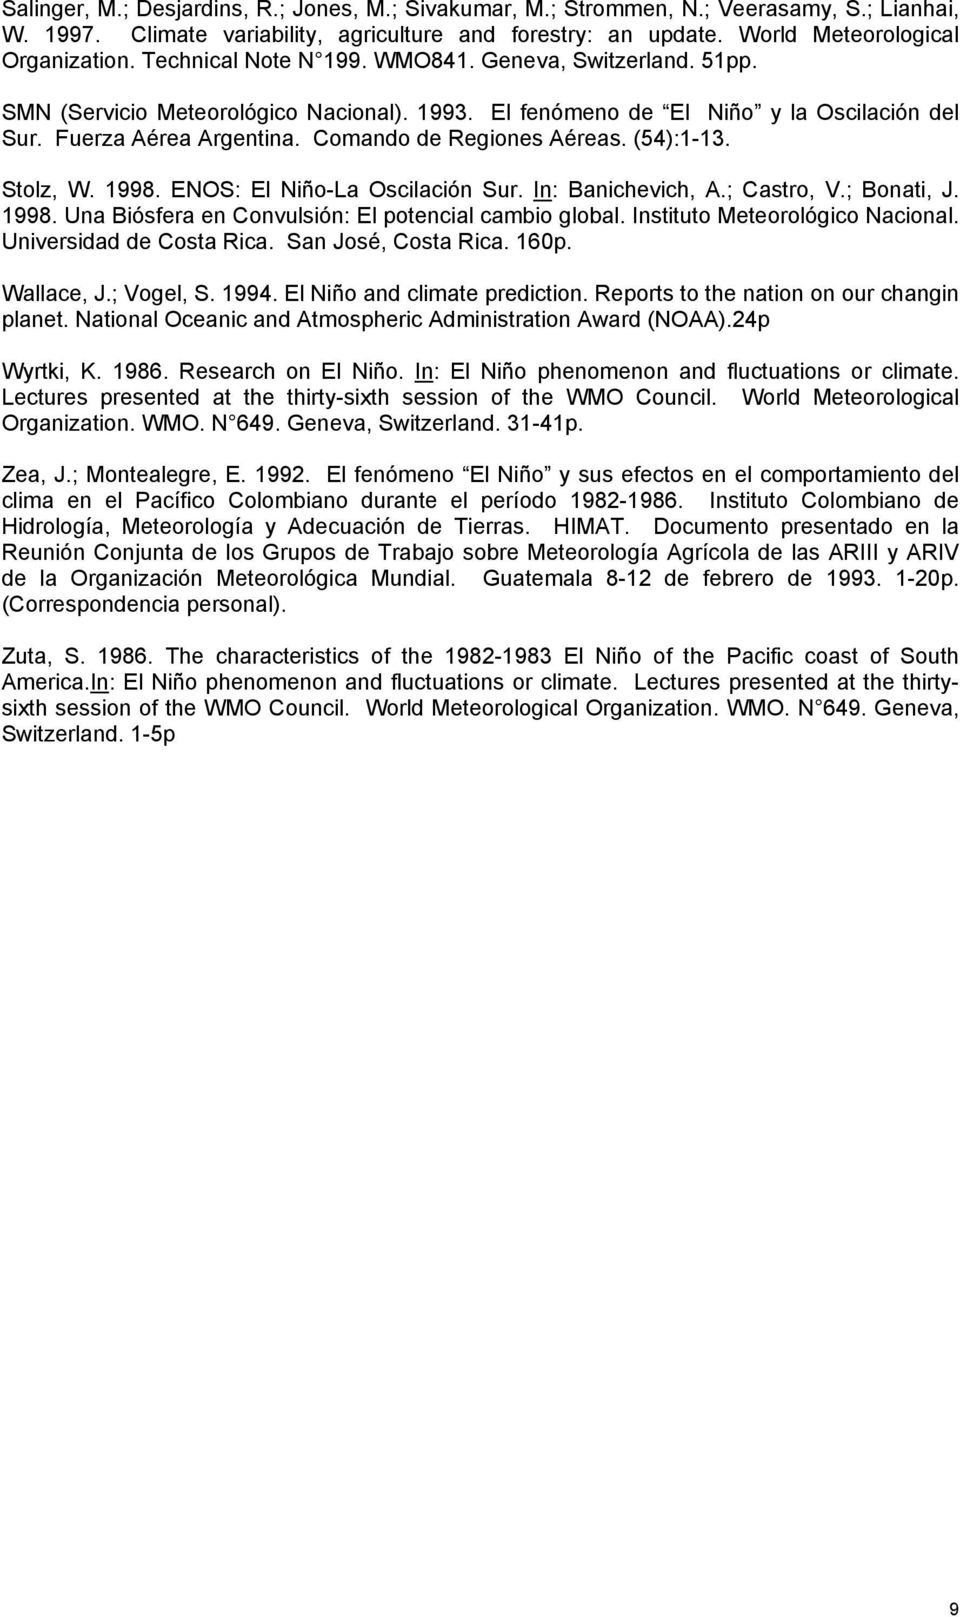 Comando de Regiones Aéreas. (54):1-13. Stolz, W. 1998. ENOS: El Niño-La Oscilación Sur. In: Banichevich, A.; Castro, V.; Bonati, J. 1998. Una Biósfera en Convulsión: El potencial cambio global.